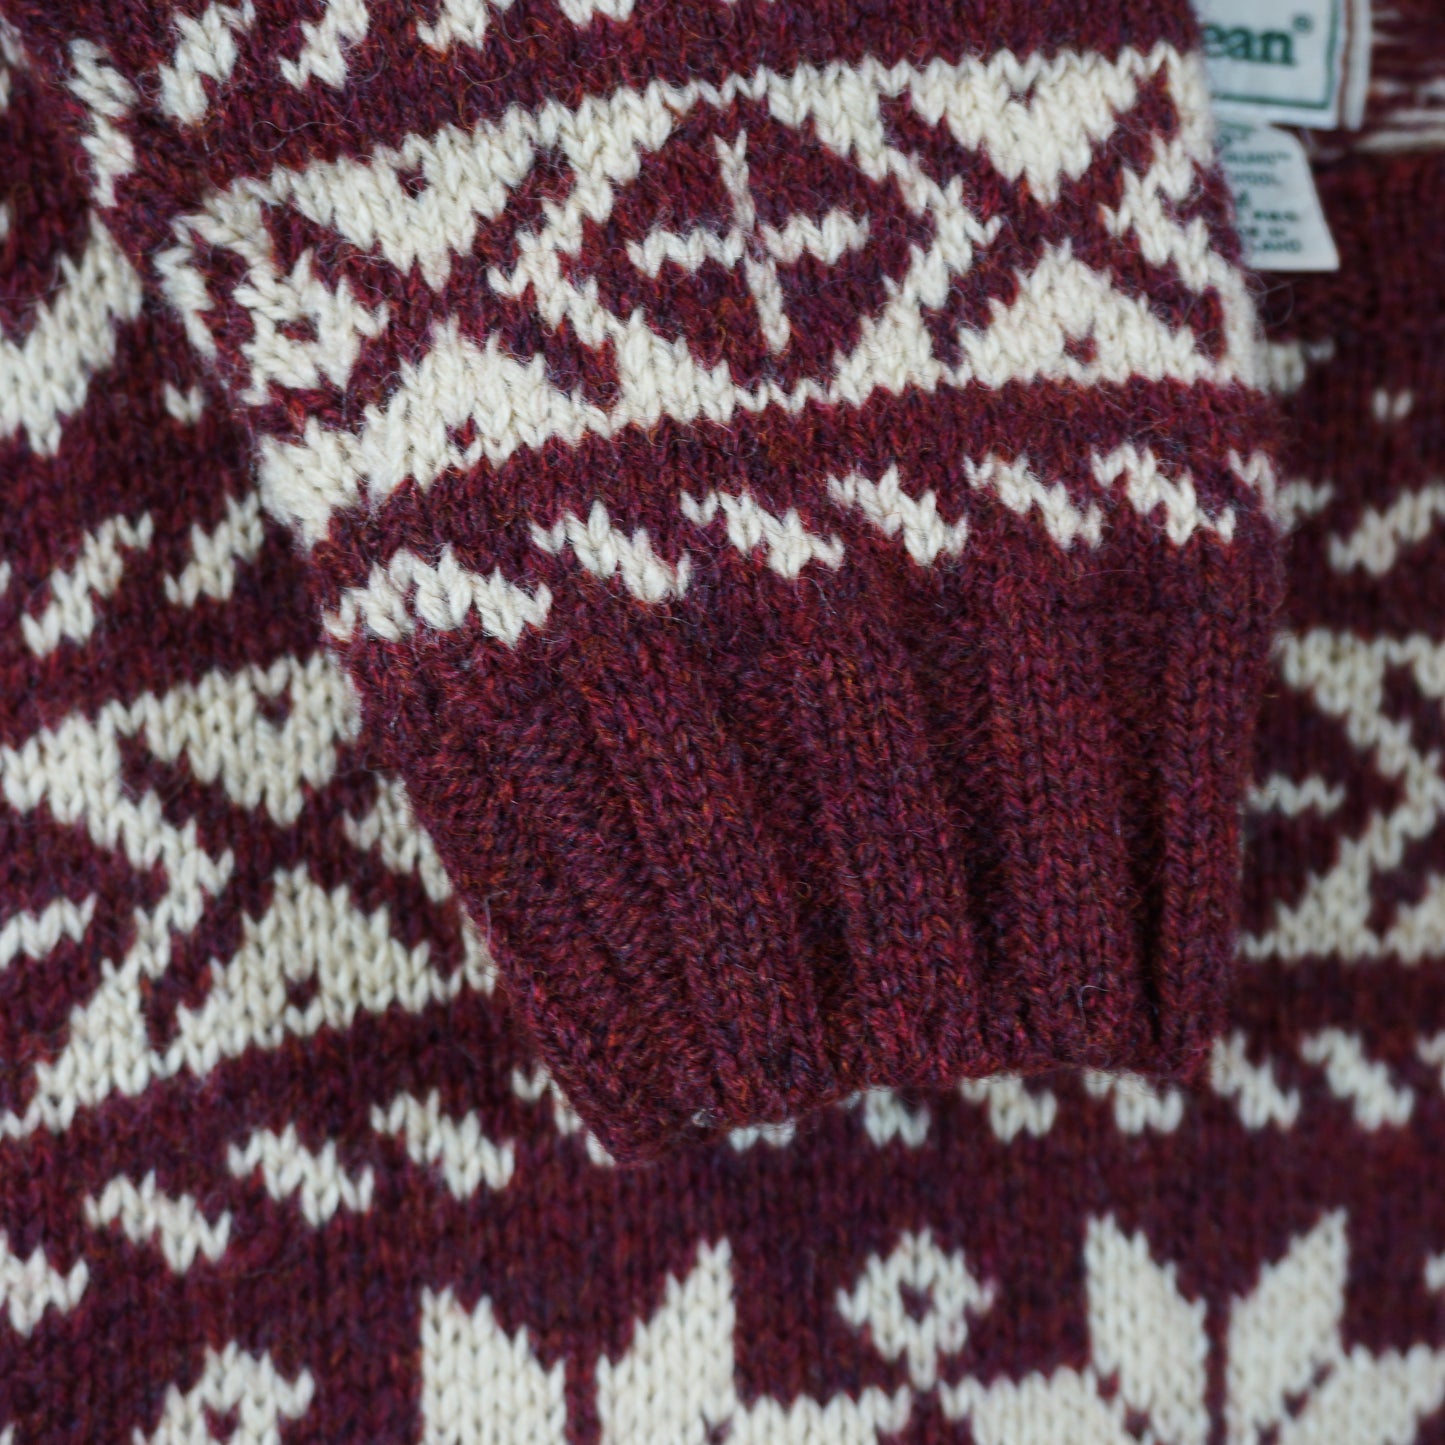 1980s L.L Bean Patterned Wool Knit Sweater (L)